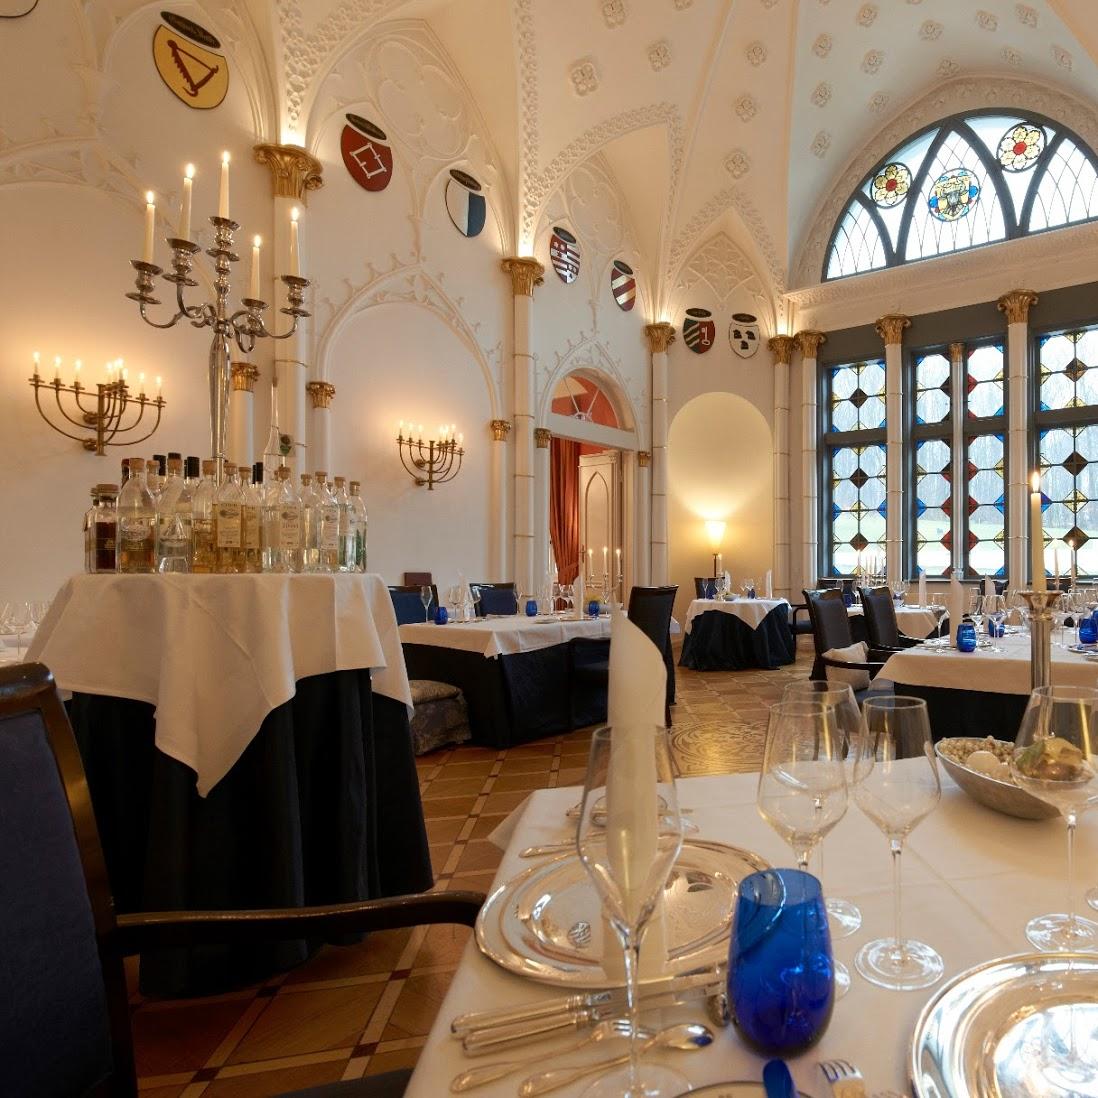 Restaurant "Gourmetrestaurant im Wappen-Saal" in Hohen-Demzin